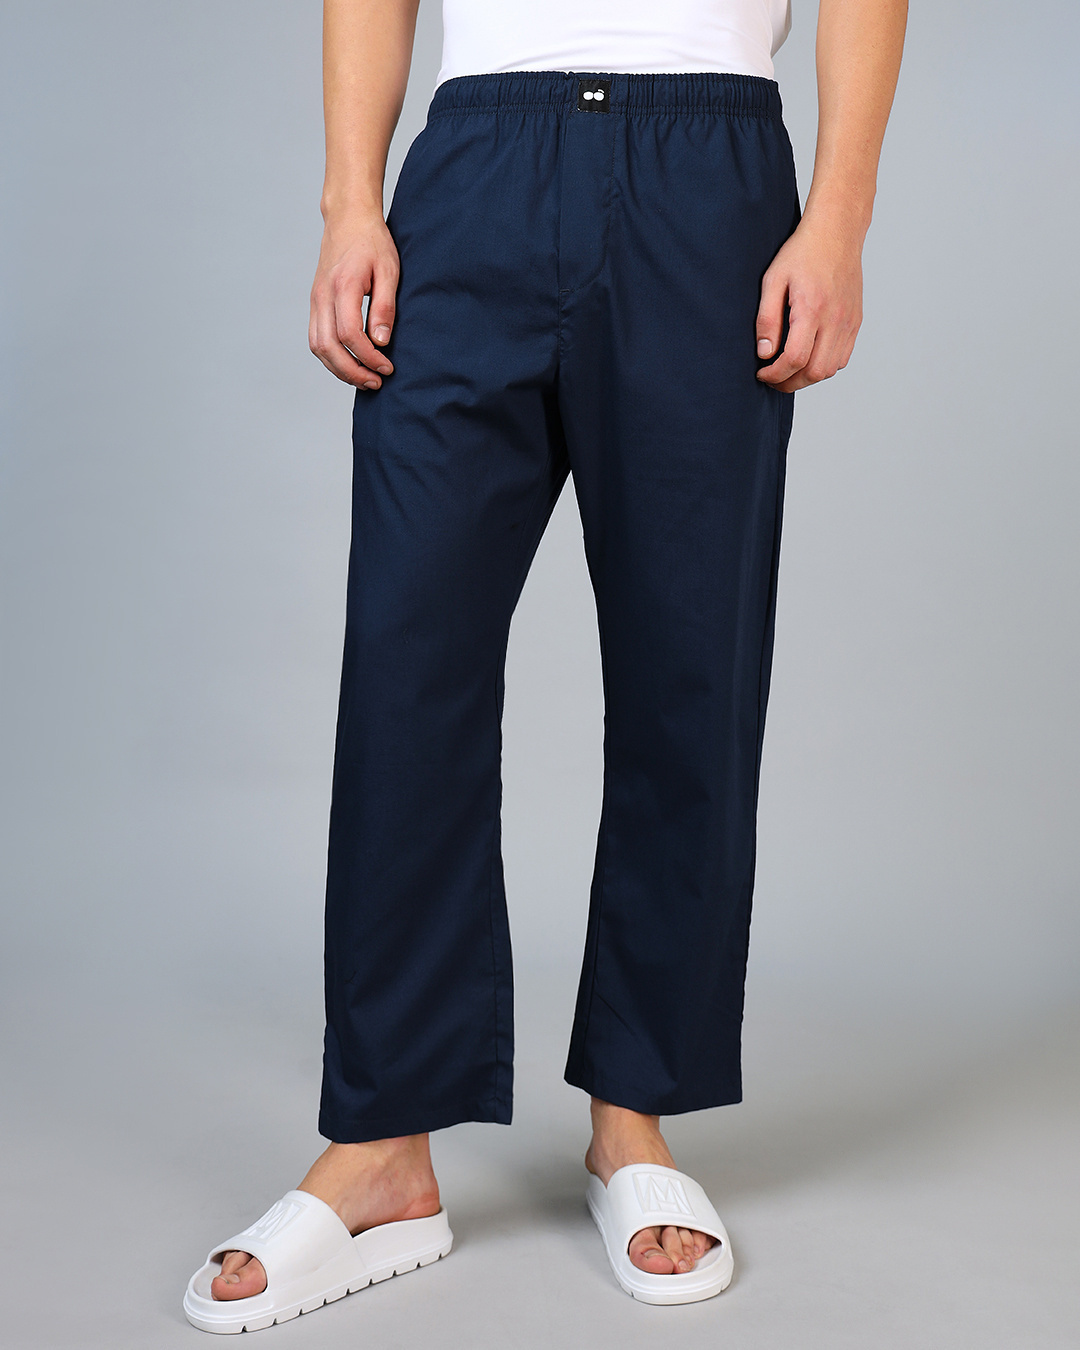 Buy Men's Navy Blue Pyjamas Online in India at Bewakoof